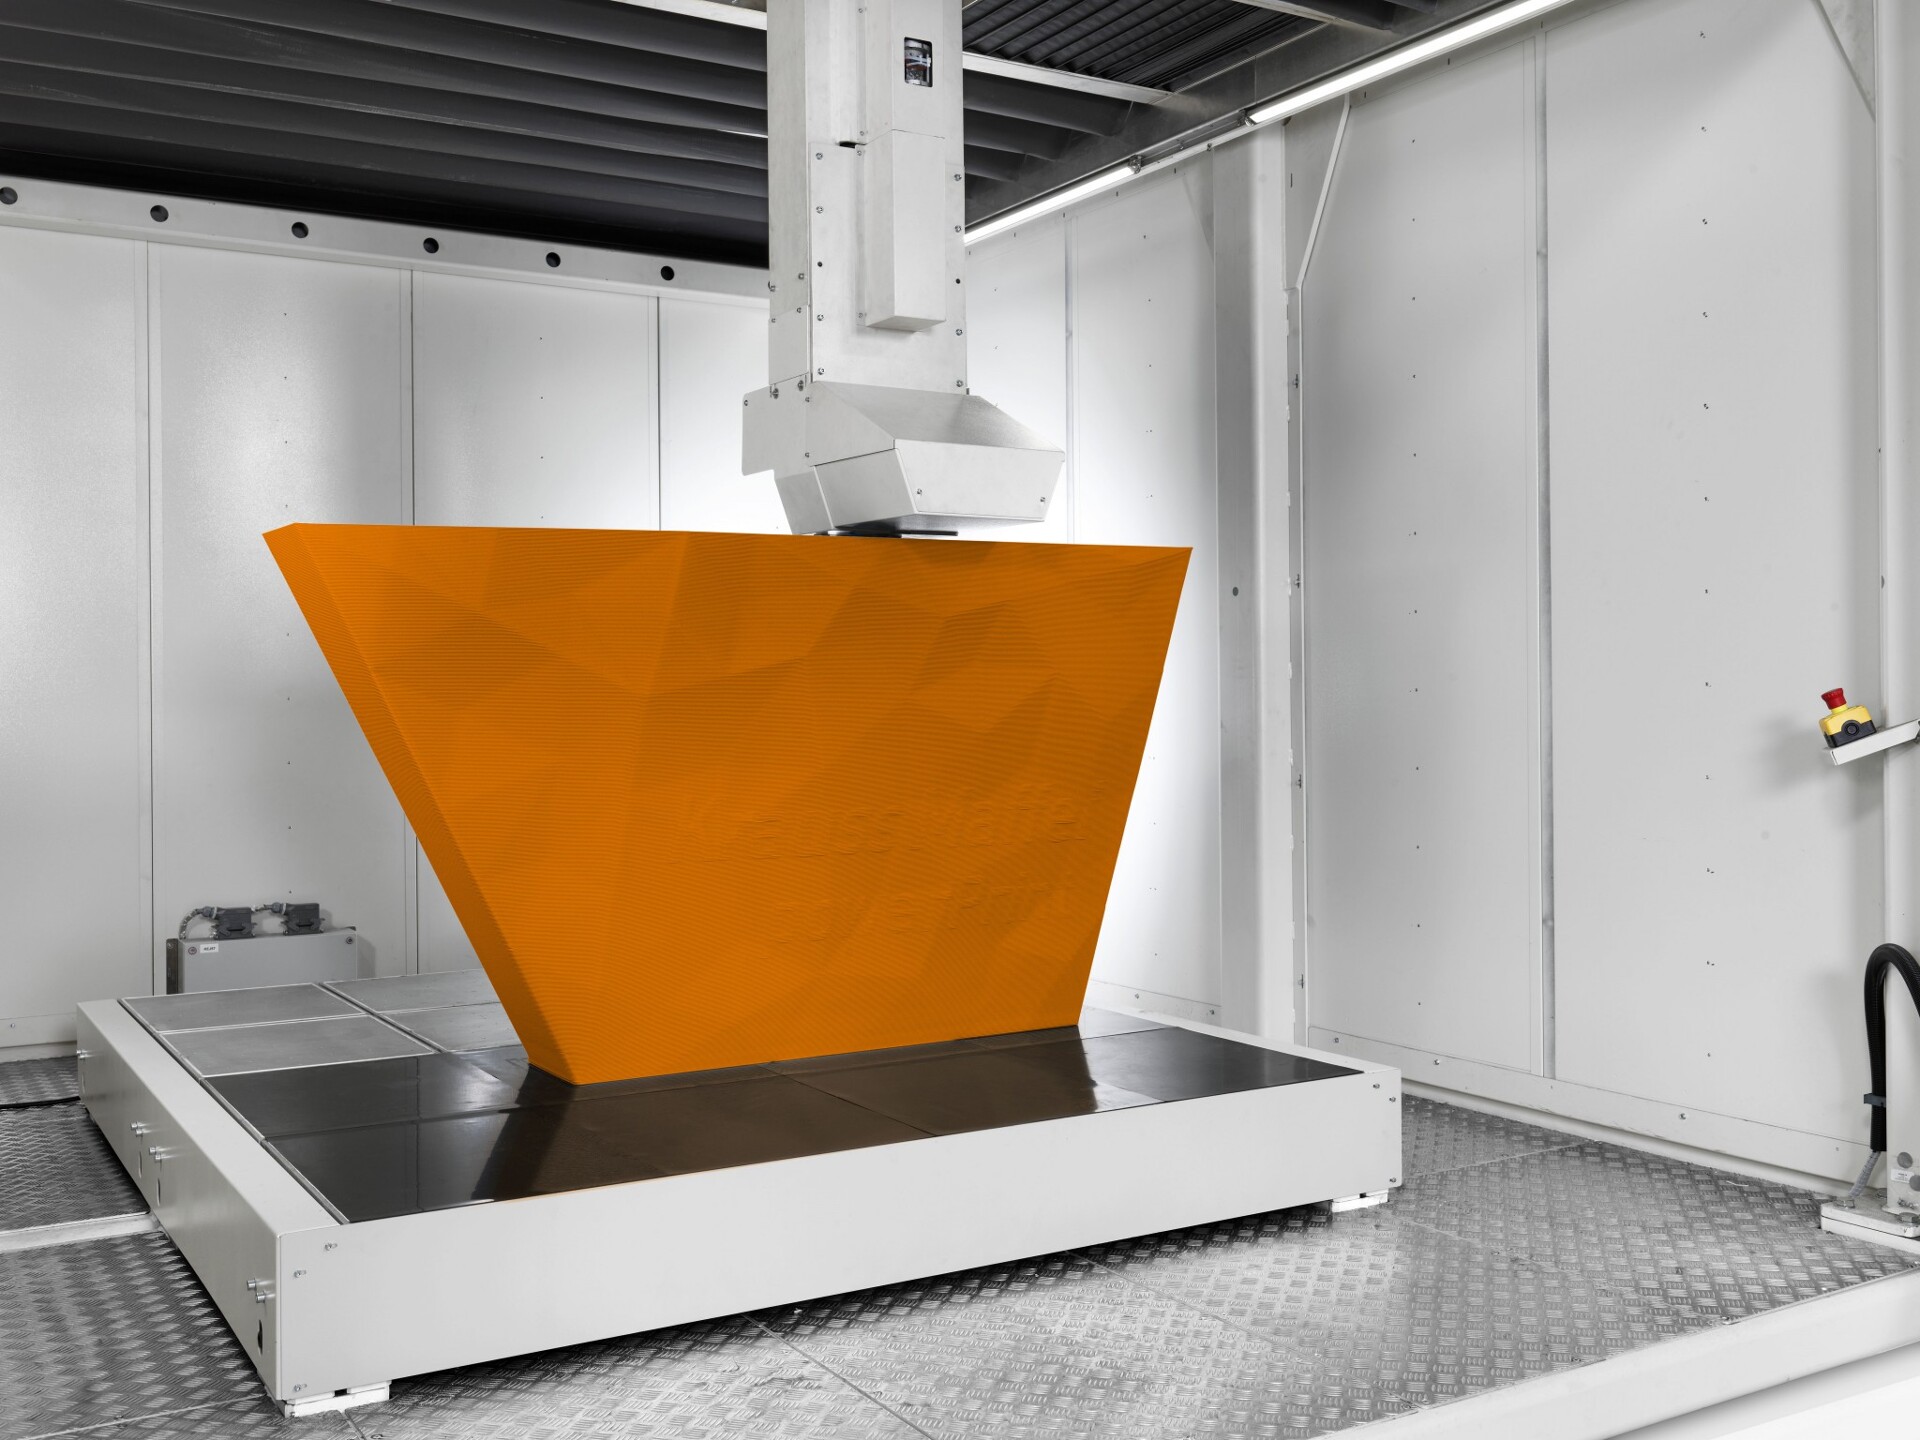 Der granulatbasierte 3D-Drucker powerPrint mit einem wärmegedämmten Bauraum ermöglicht den Druck von großformatigen Bauteilen von bis zu 2 x 2,5 x 2 m (Foto: KraussMaffei).